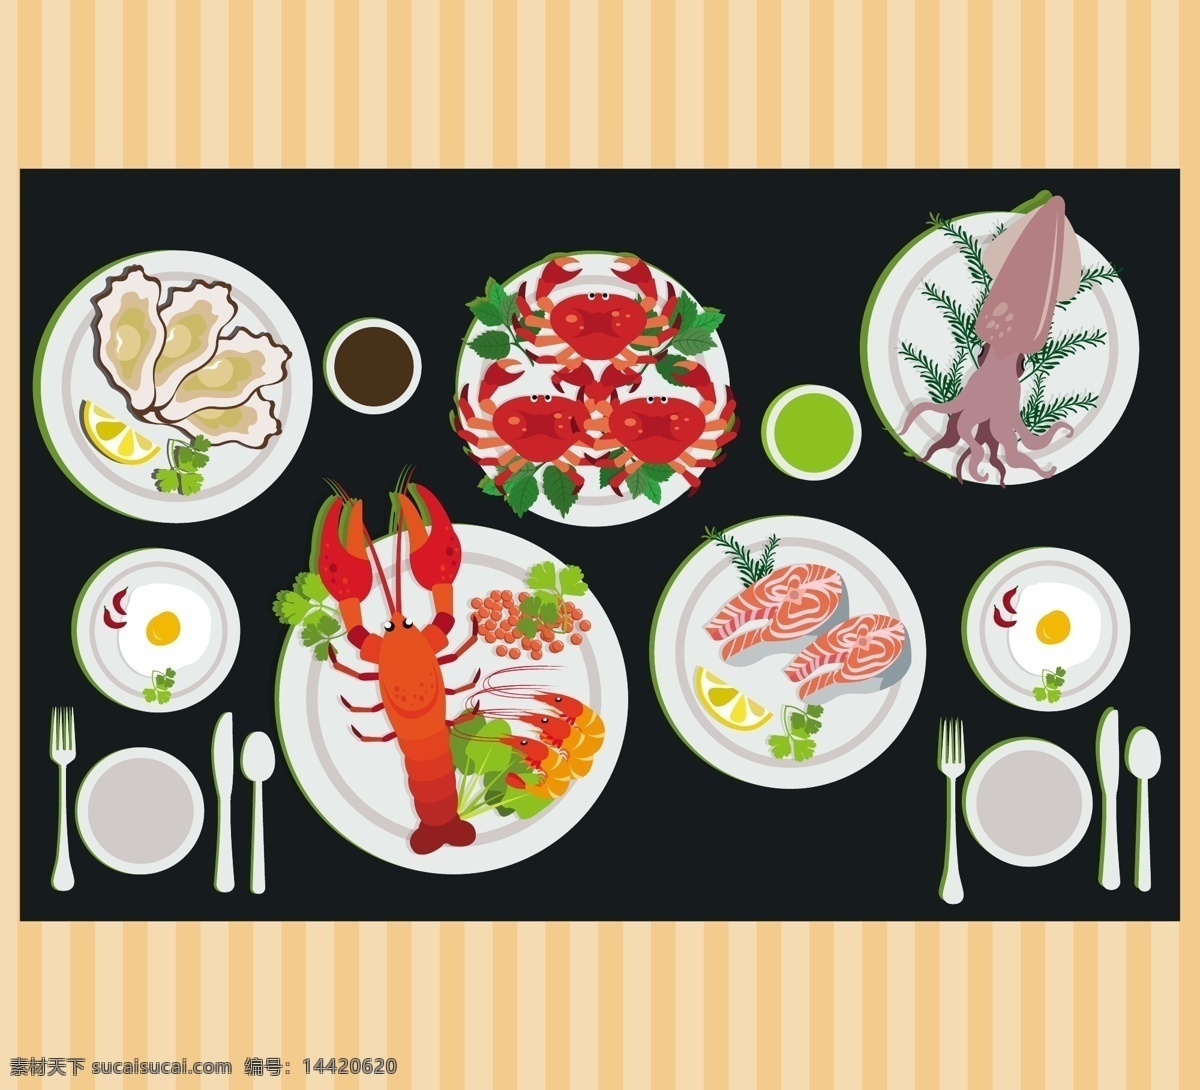 海鲜 广告 各种 菜 海鲜广告 各种菜 生蚝 大龙虾 肉 鱿鱼 螃蟹 杯子 套餐 碗筷 矢量背景